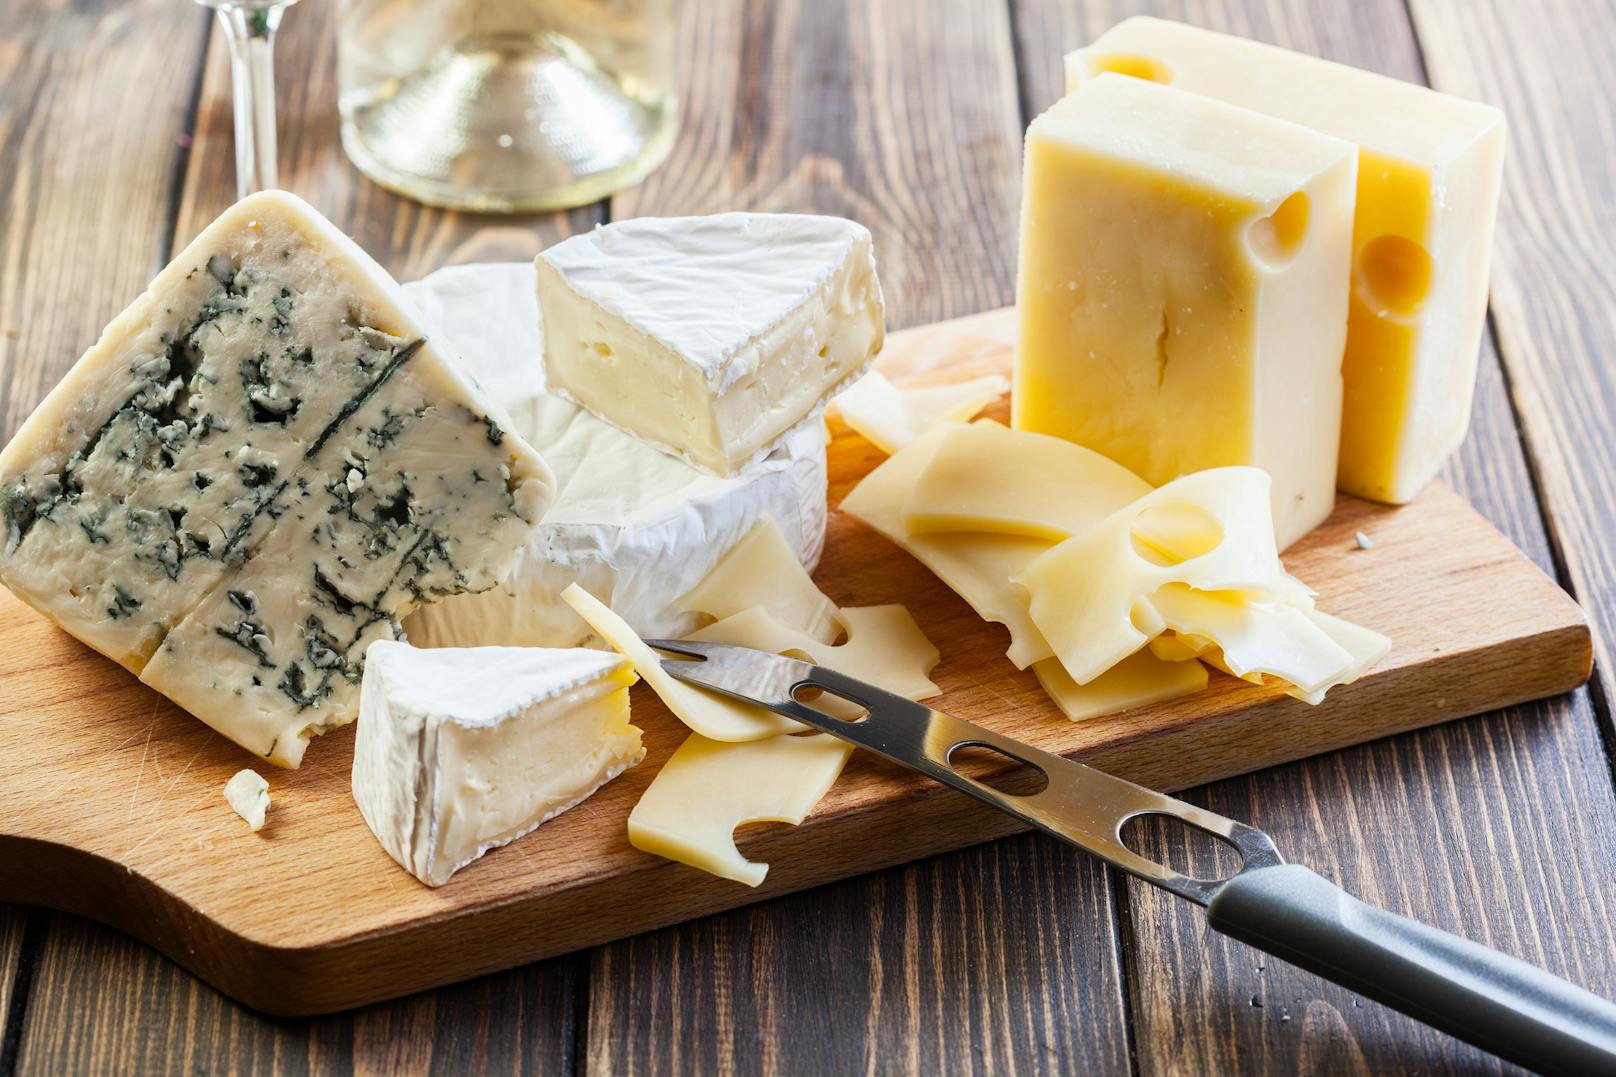 Der übermäßige Konsum von Käse kann unsere Gesundheit gefährden.